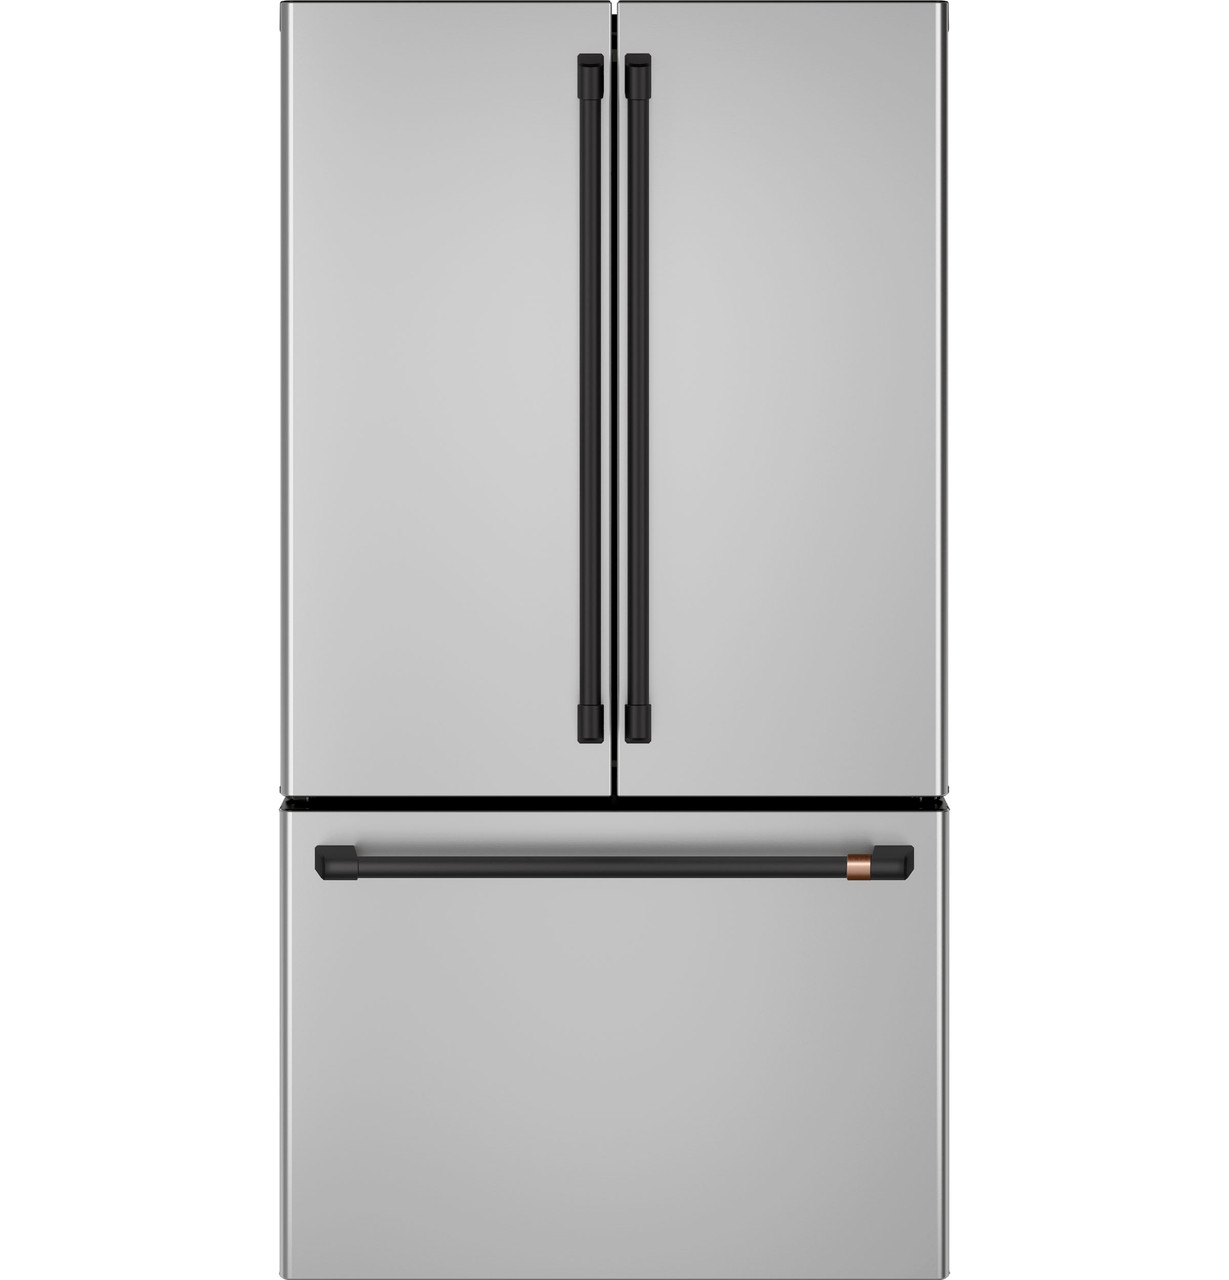 7 More Affordable Full-Size Retro Refrigerators, 3GoodOnes.com